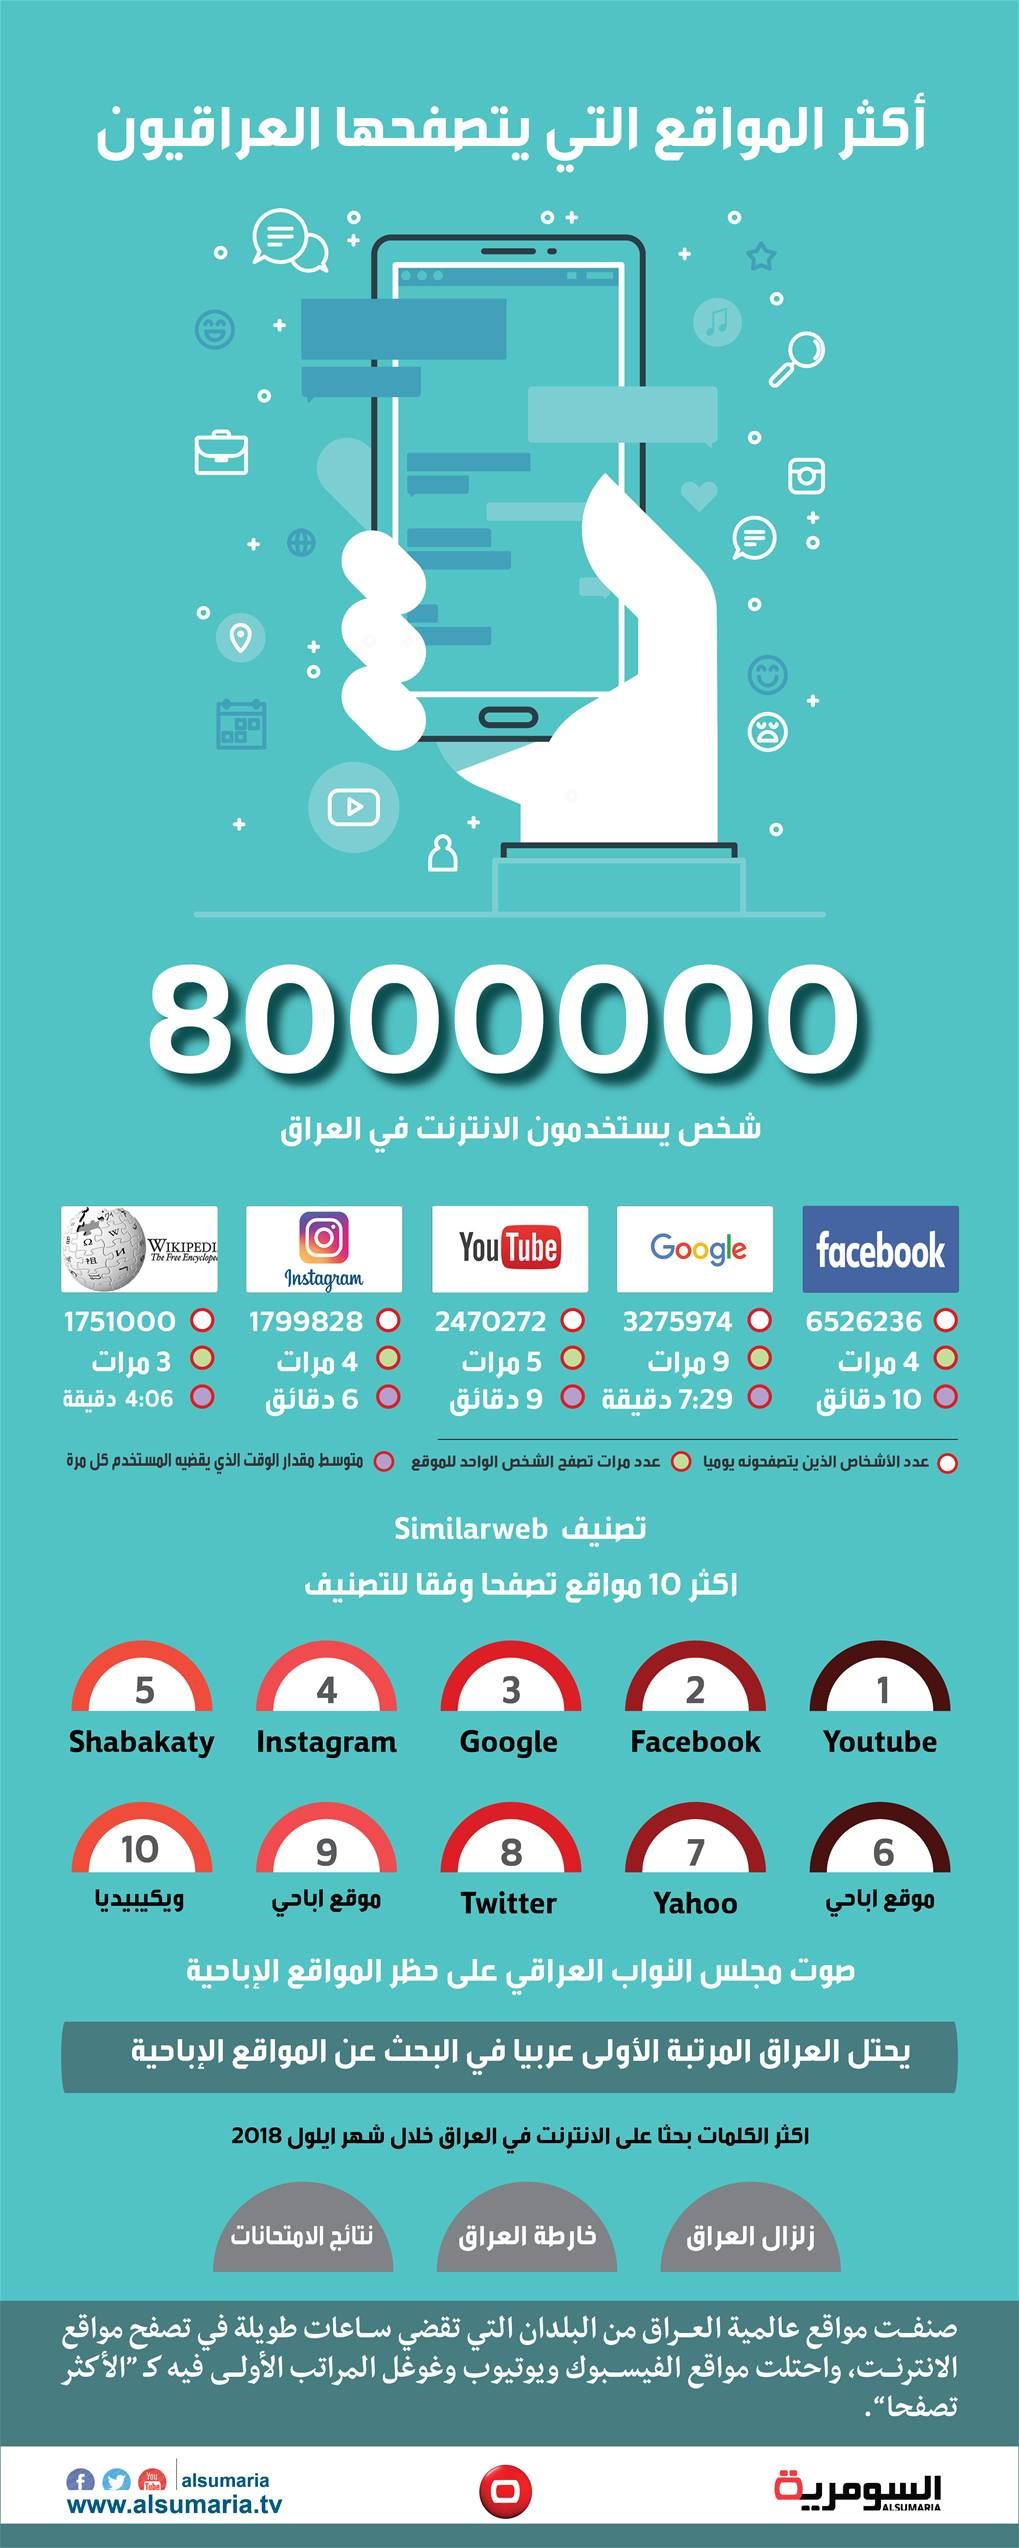 بالانفوغراف... 8 ملايين عراقي يتصفحون الانترنت